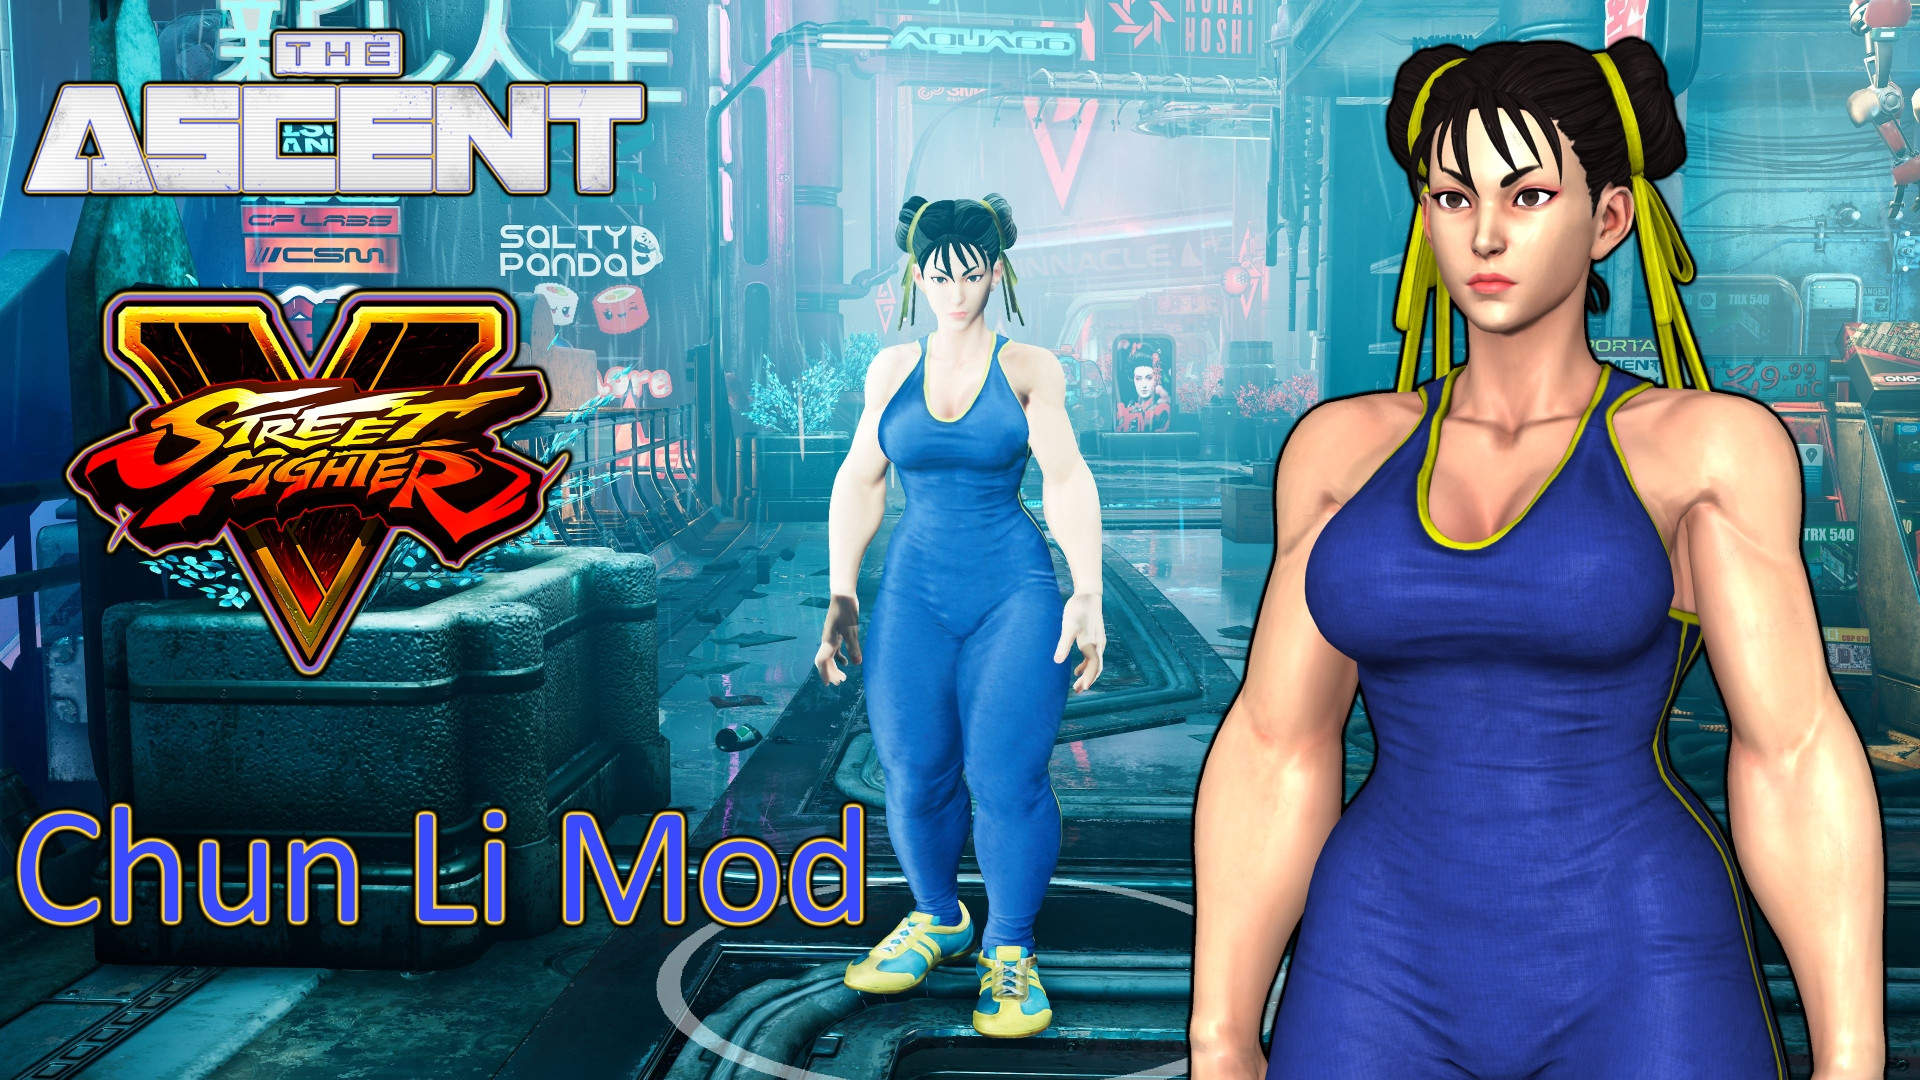 The Ascent Street Fighter 5 Chun Li Mod. 